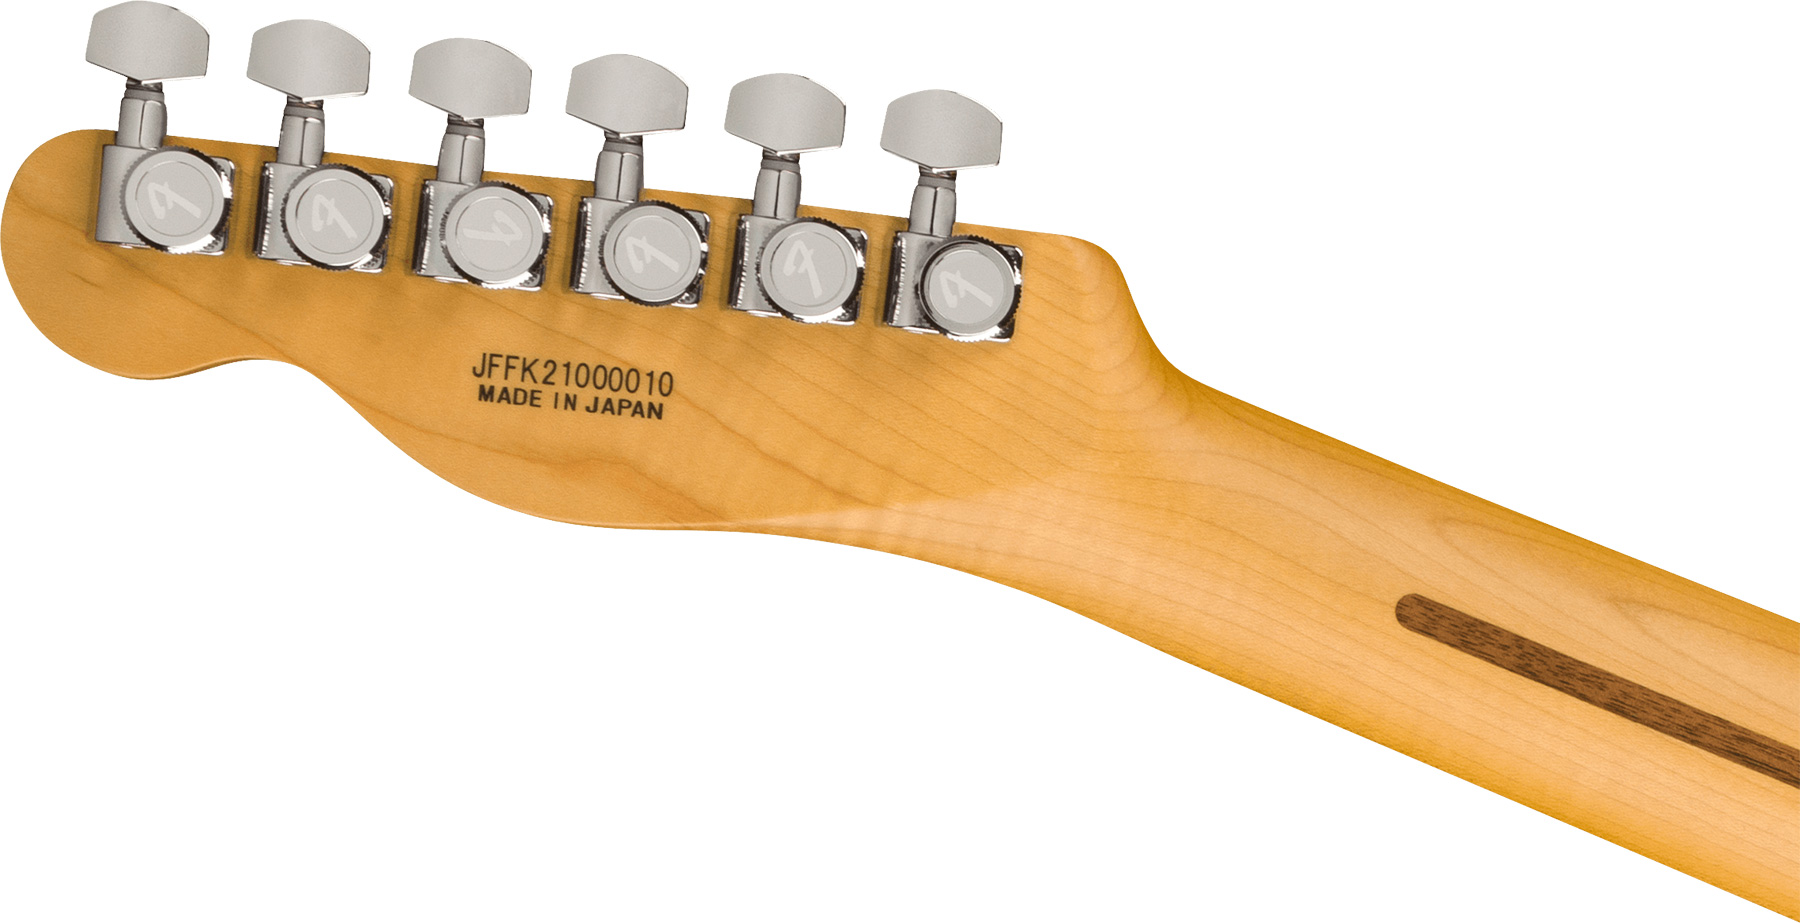 Fender Tele Aerodyne Special Jap 2s Ht Rw - California Blue - Guitarra eléctrica con forma de tel - Variation 3